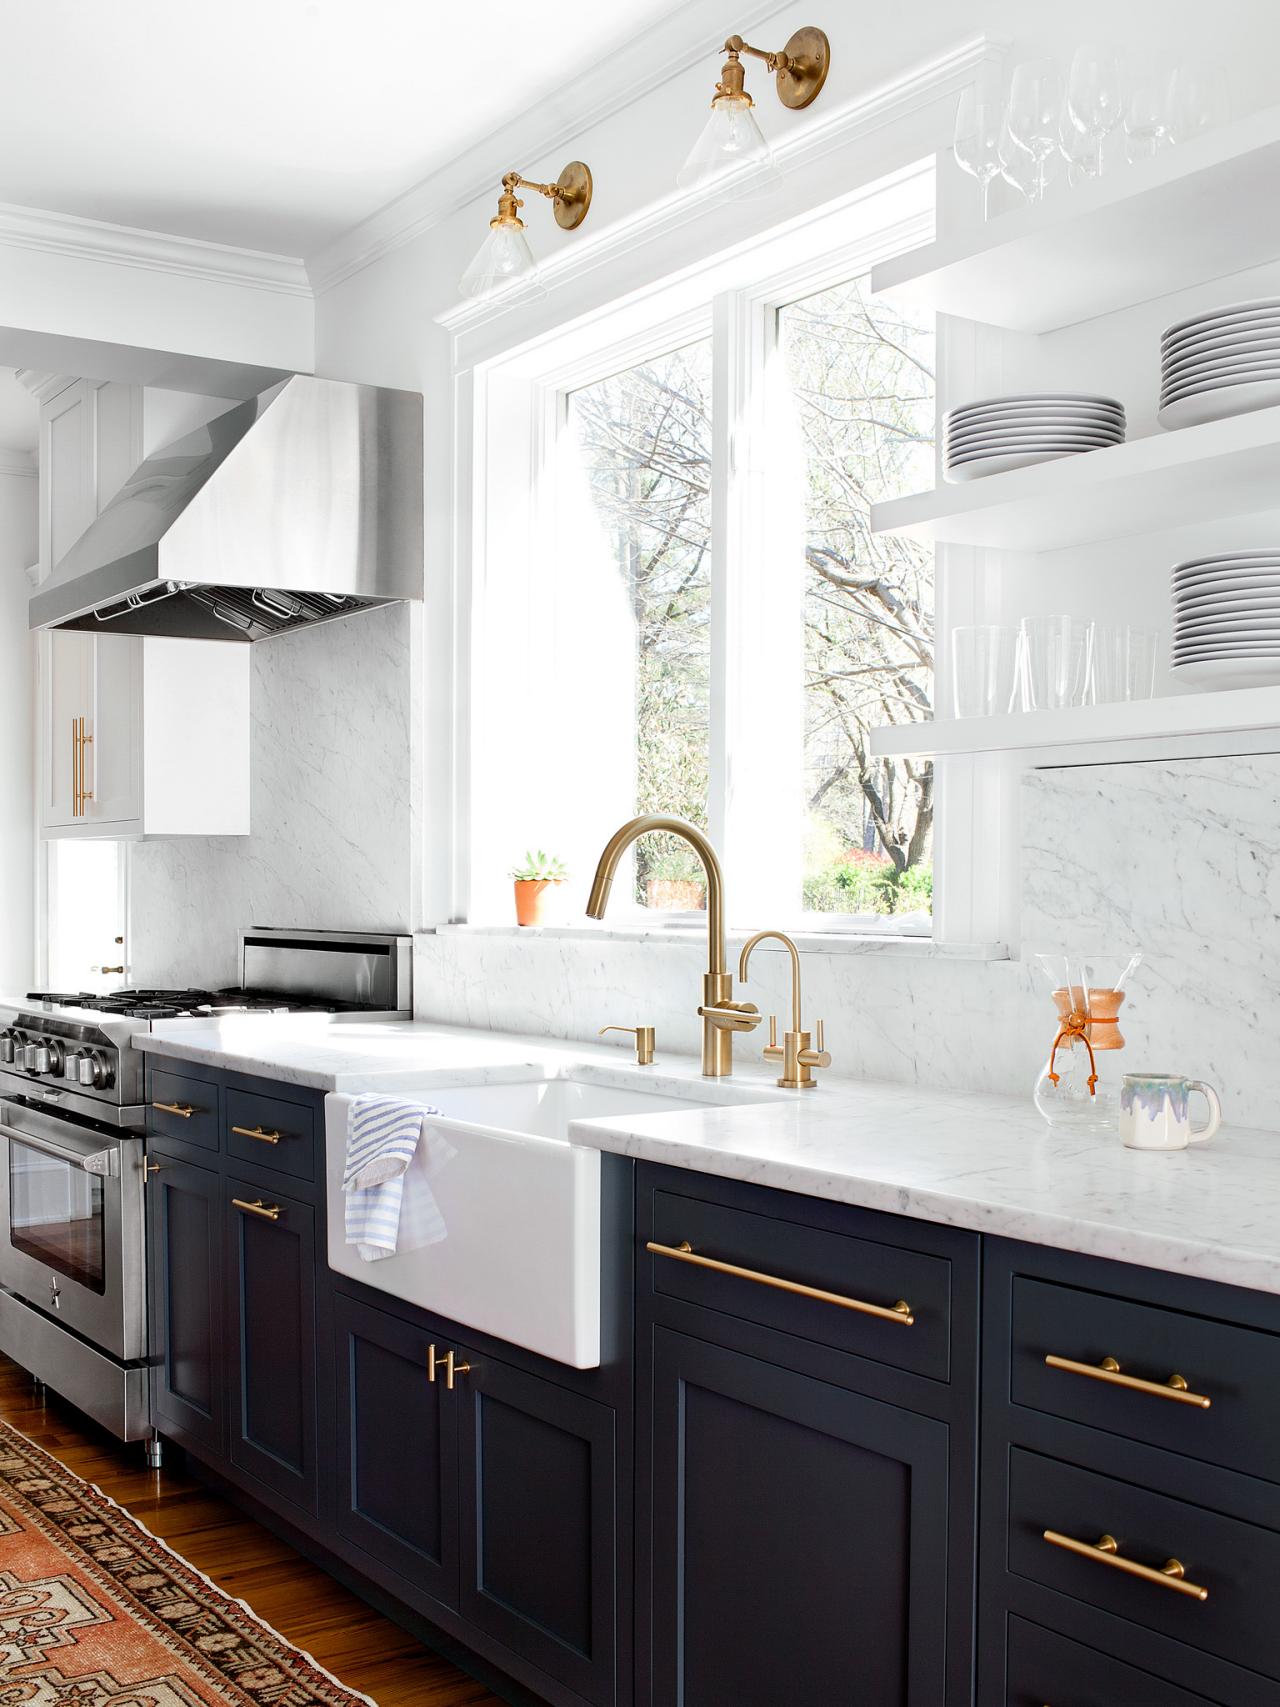 9 gorgeous kitchen cabinet hardware ideas | hgtv